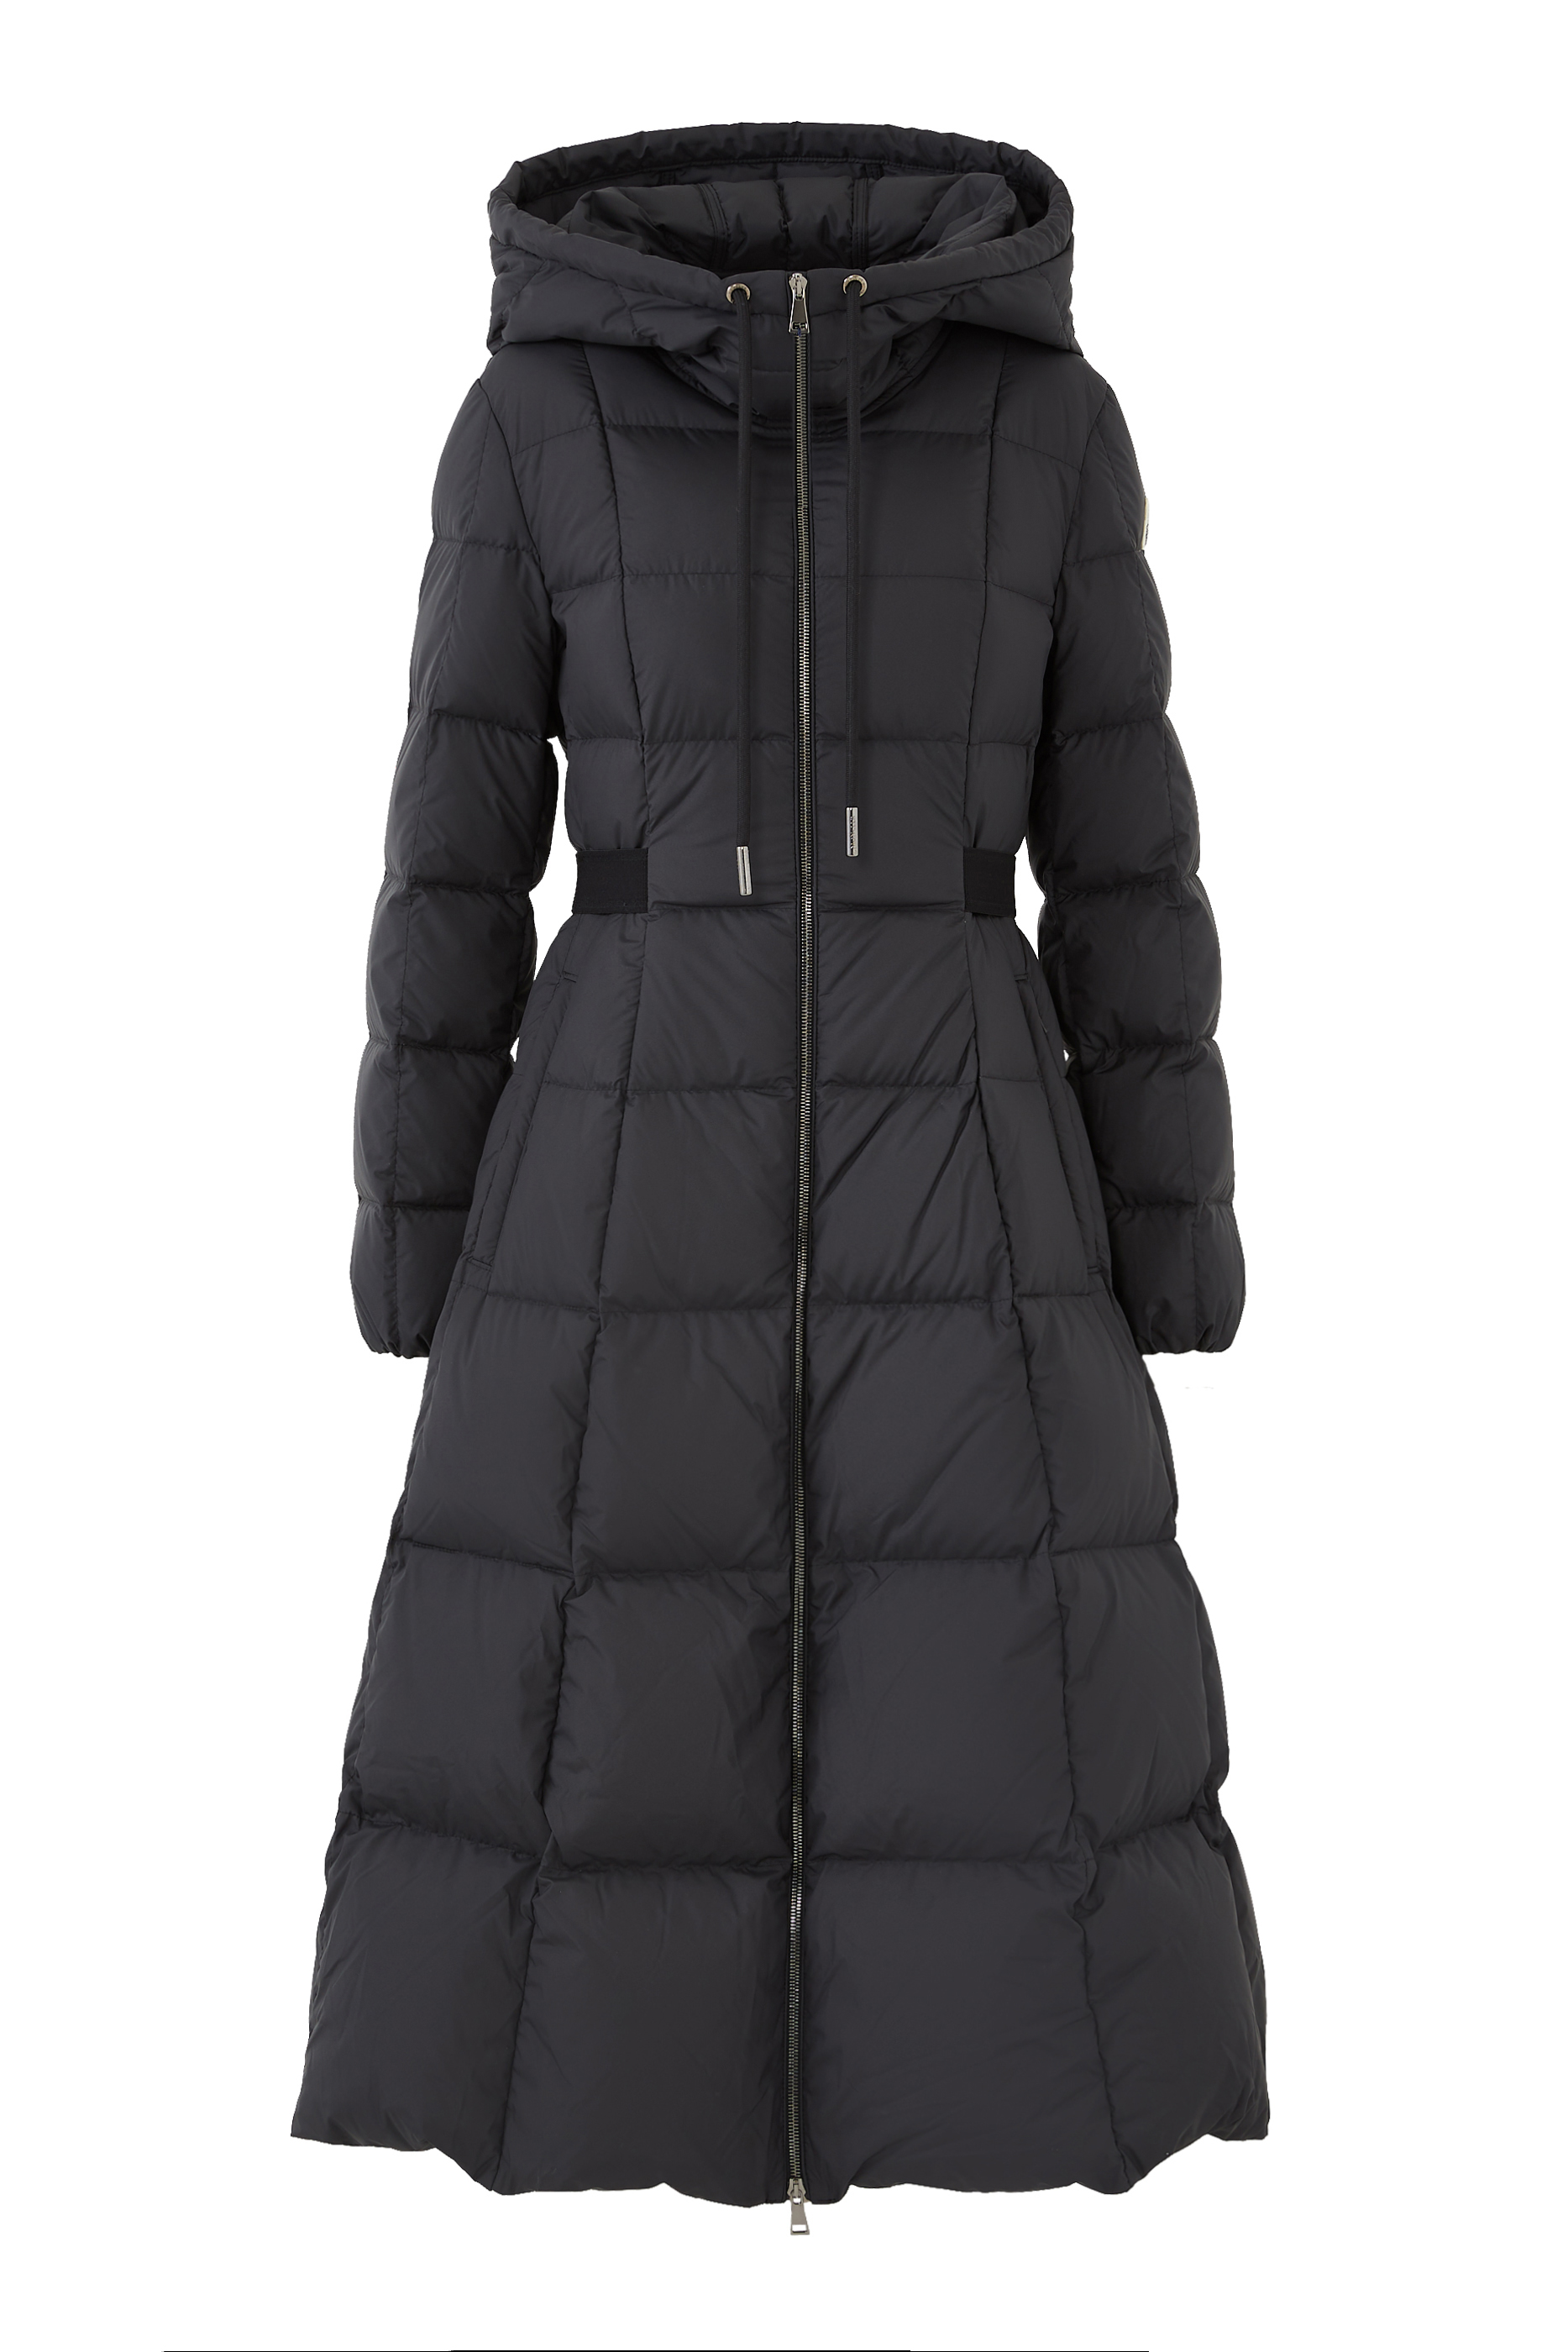 Buy Moncler Faucon Long Coat for Womens | Bloomingdale's KSA